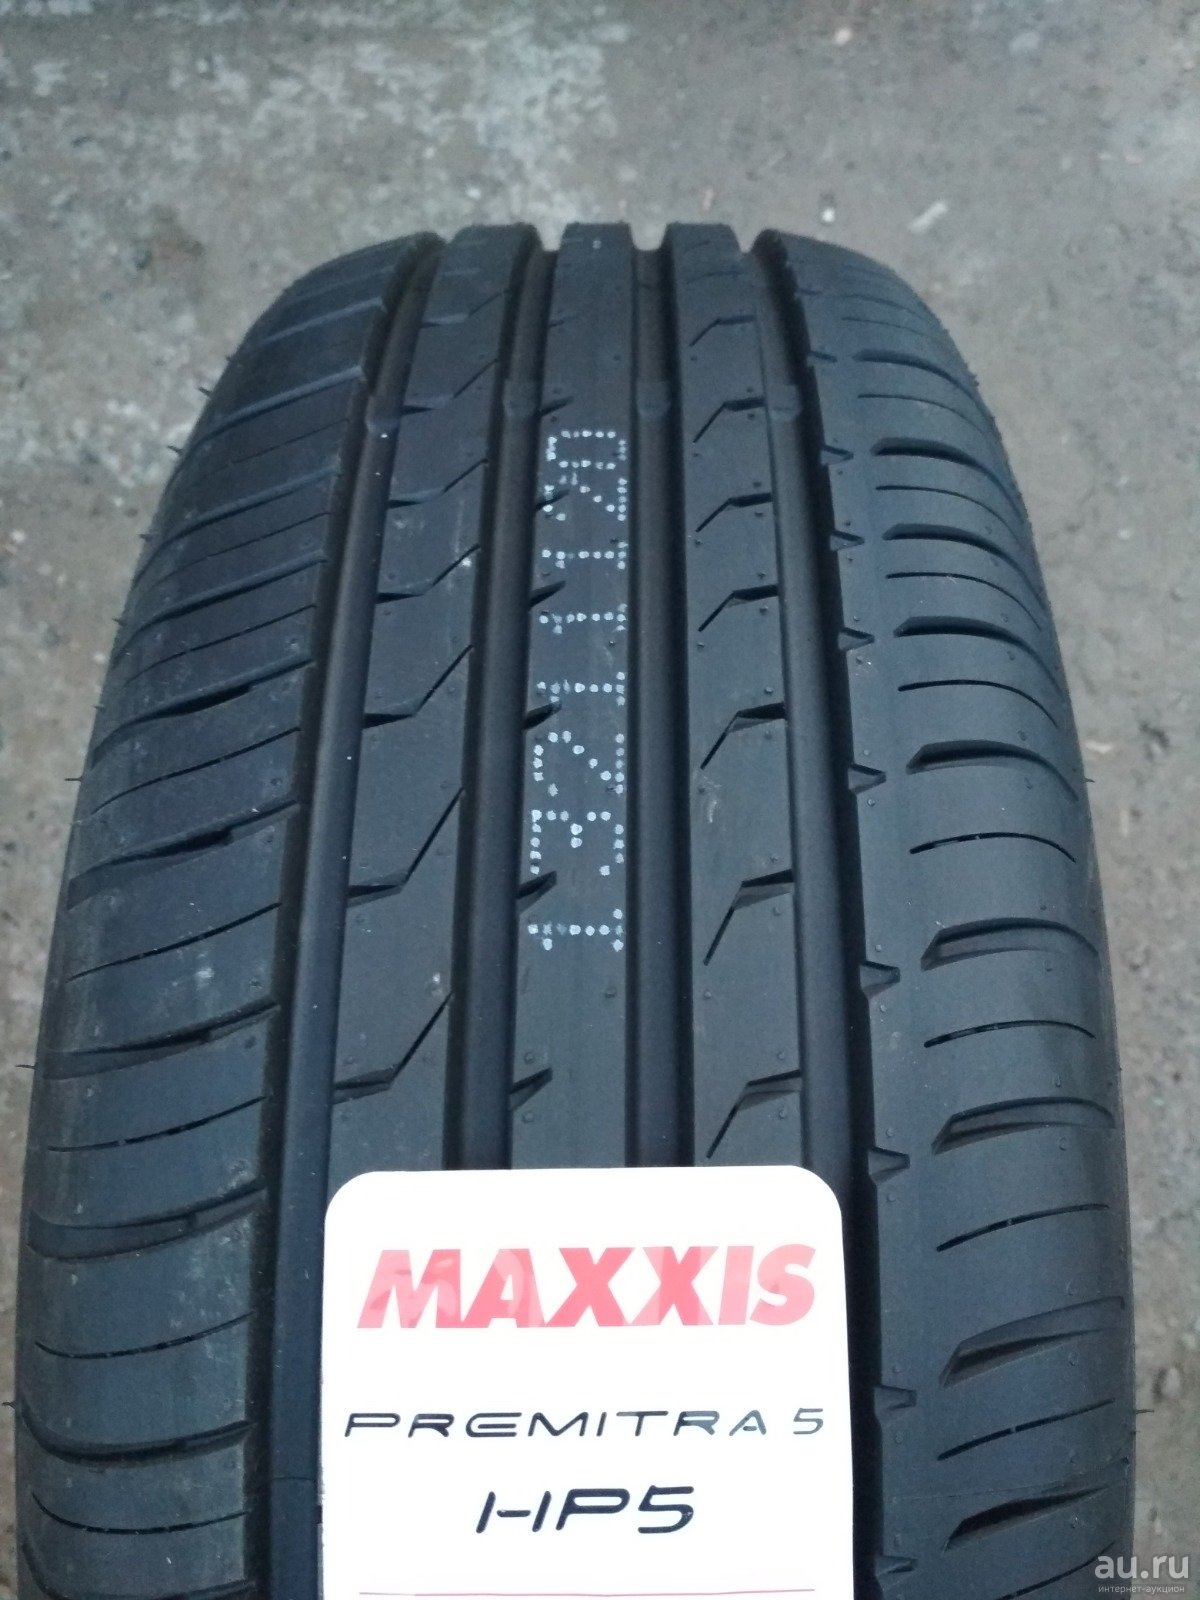 Maxxis premitra hp5 205 55 r16. Maxxis hp5. Maxxis hp5 premitra5. Maxxis 225/60/17 99v Premitra hp5. Maxxis Premitra hp5 235/45 r18 98w.